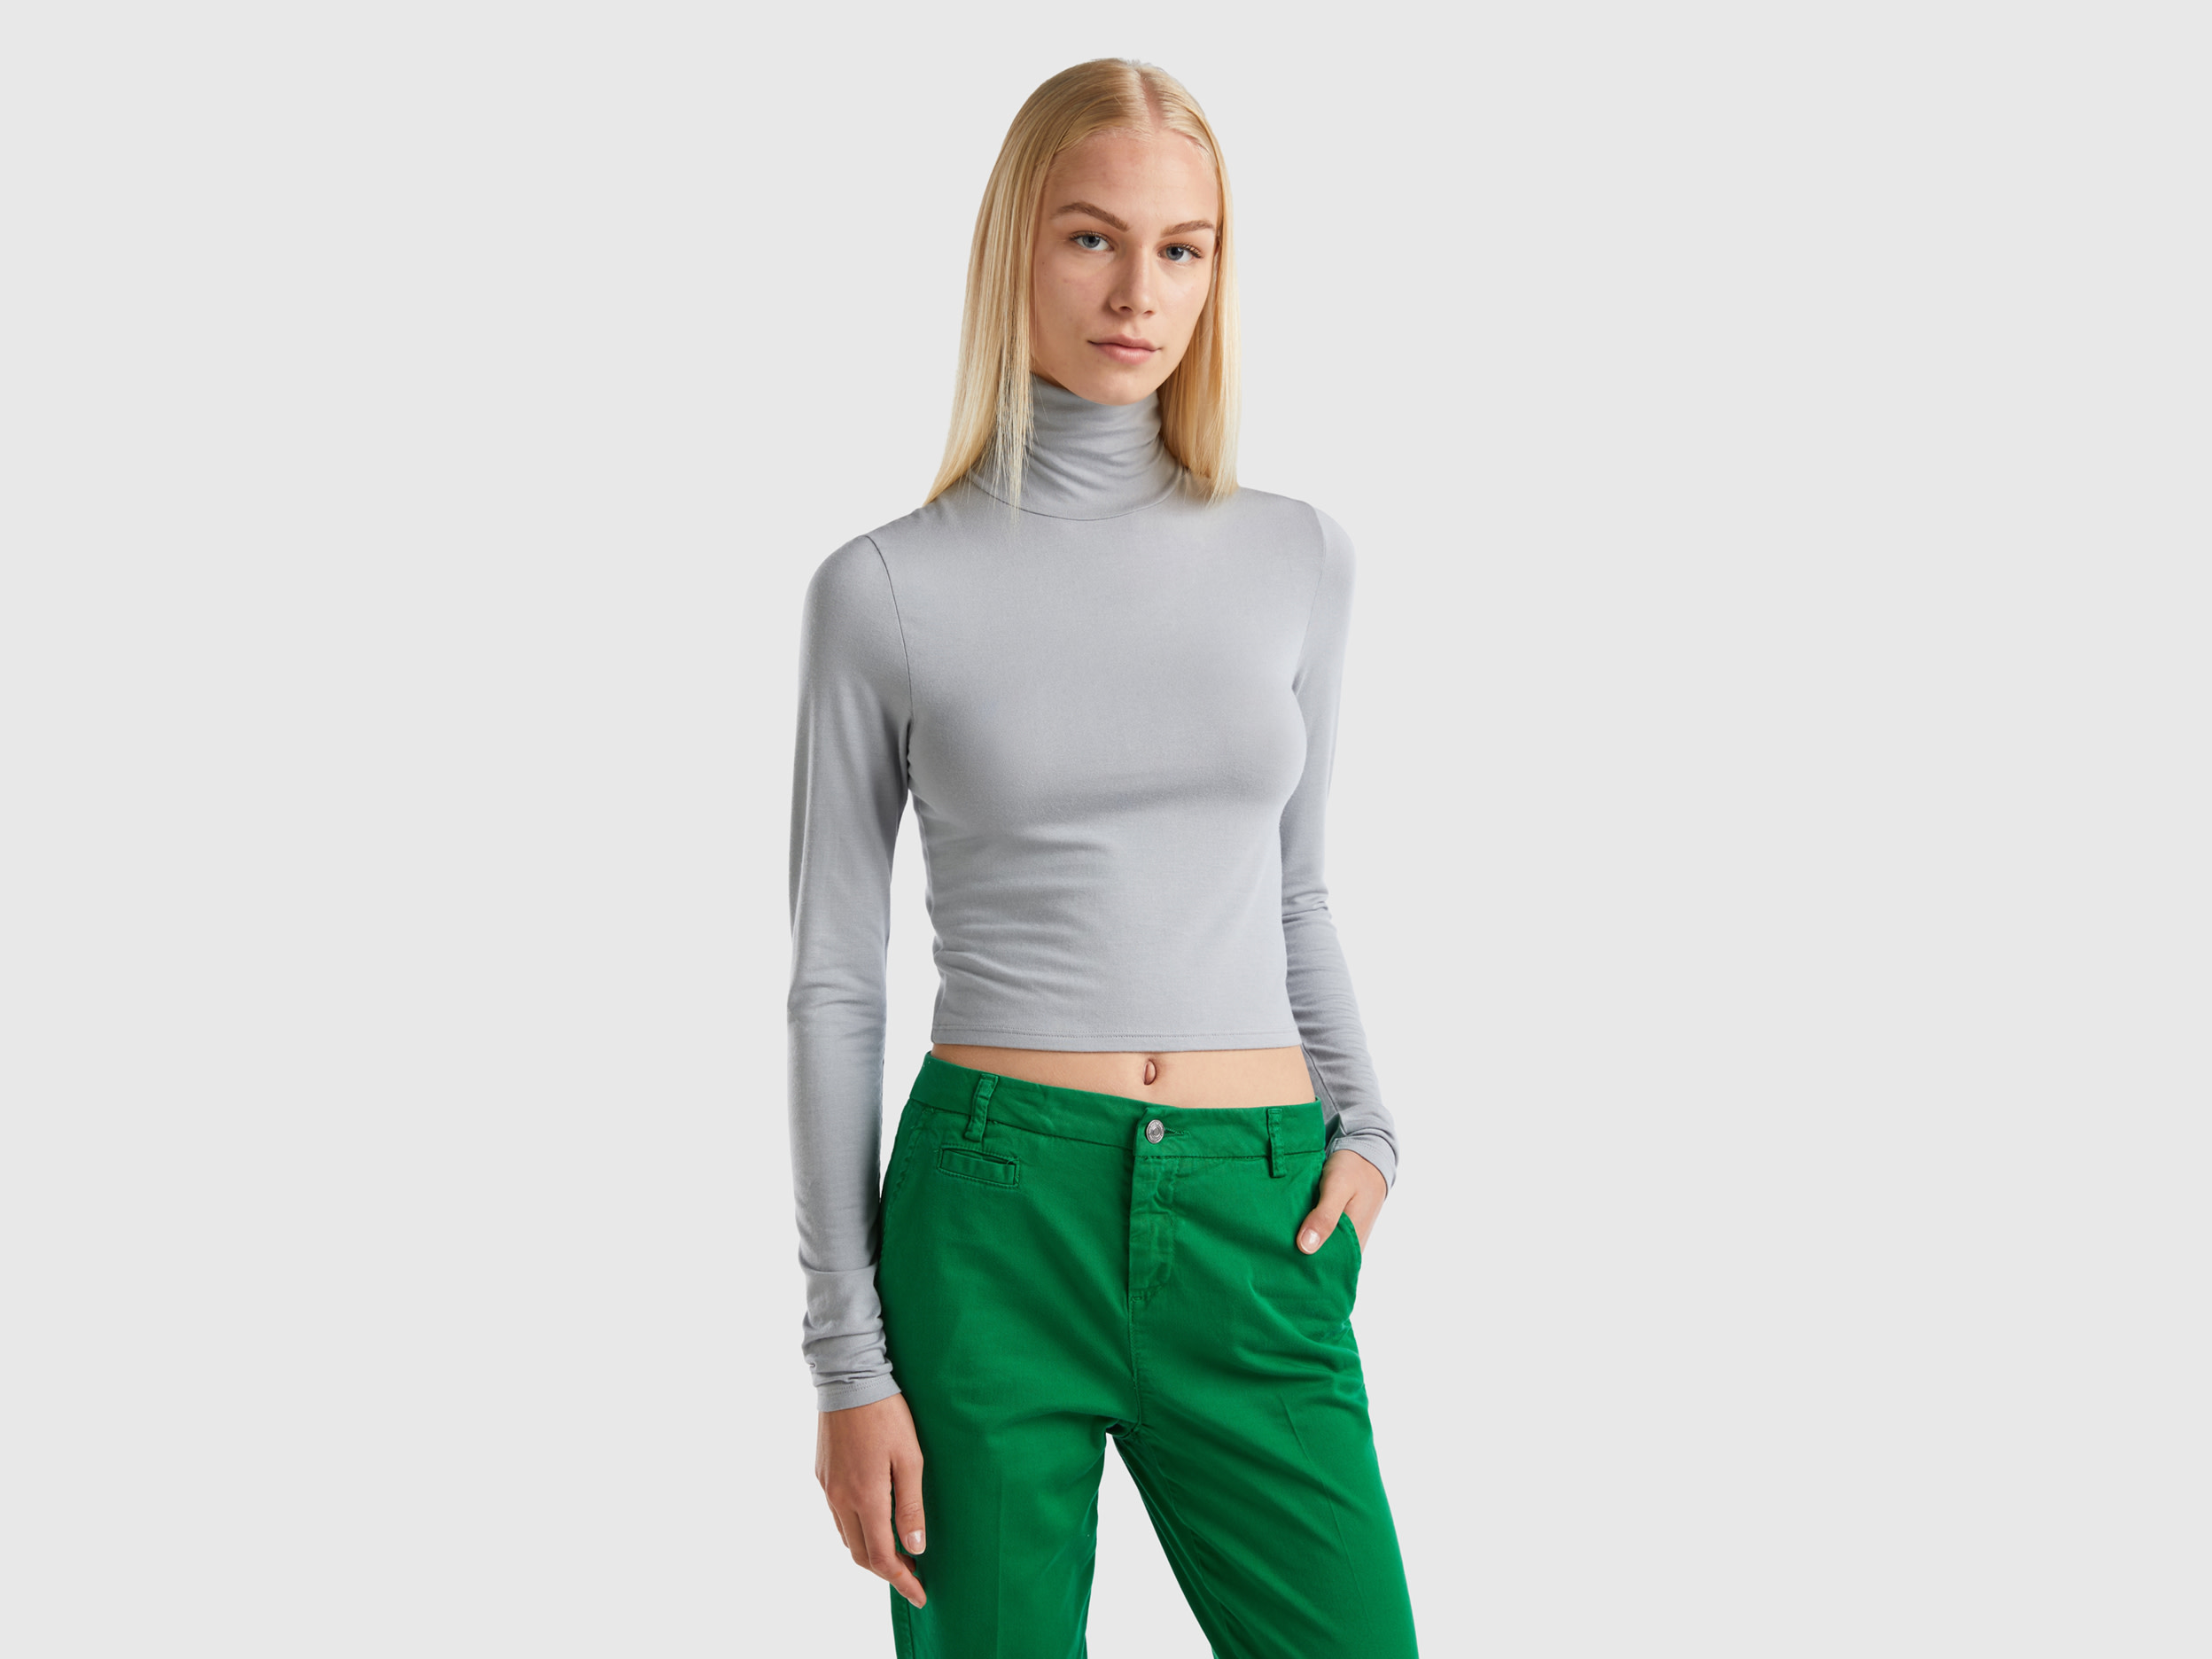 Benetton, T-shirt With High Neck, size XS, Light Gray, Women